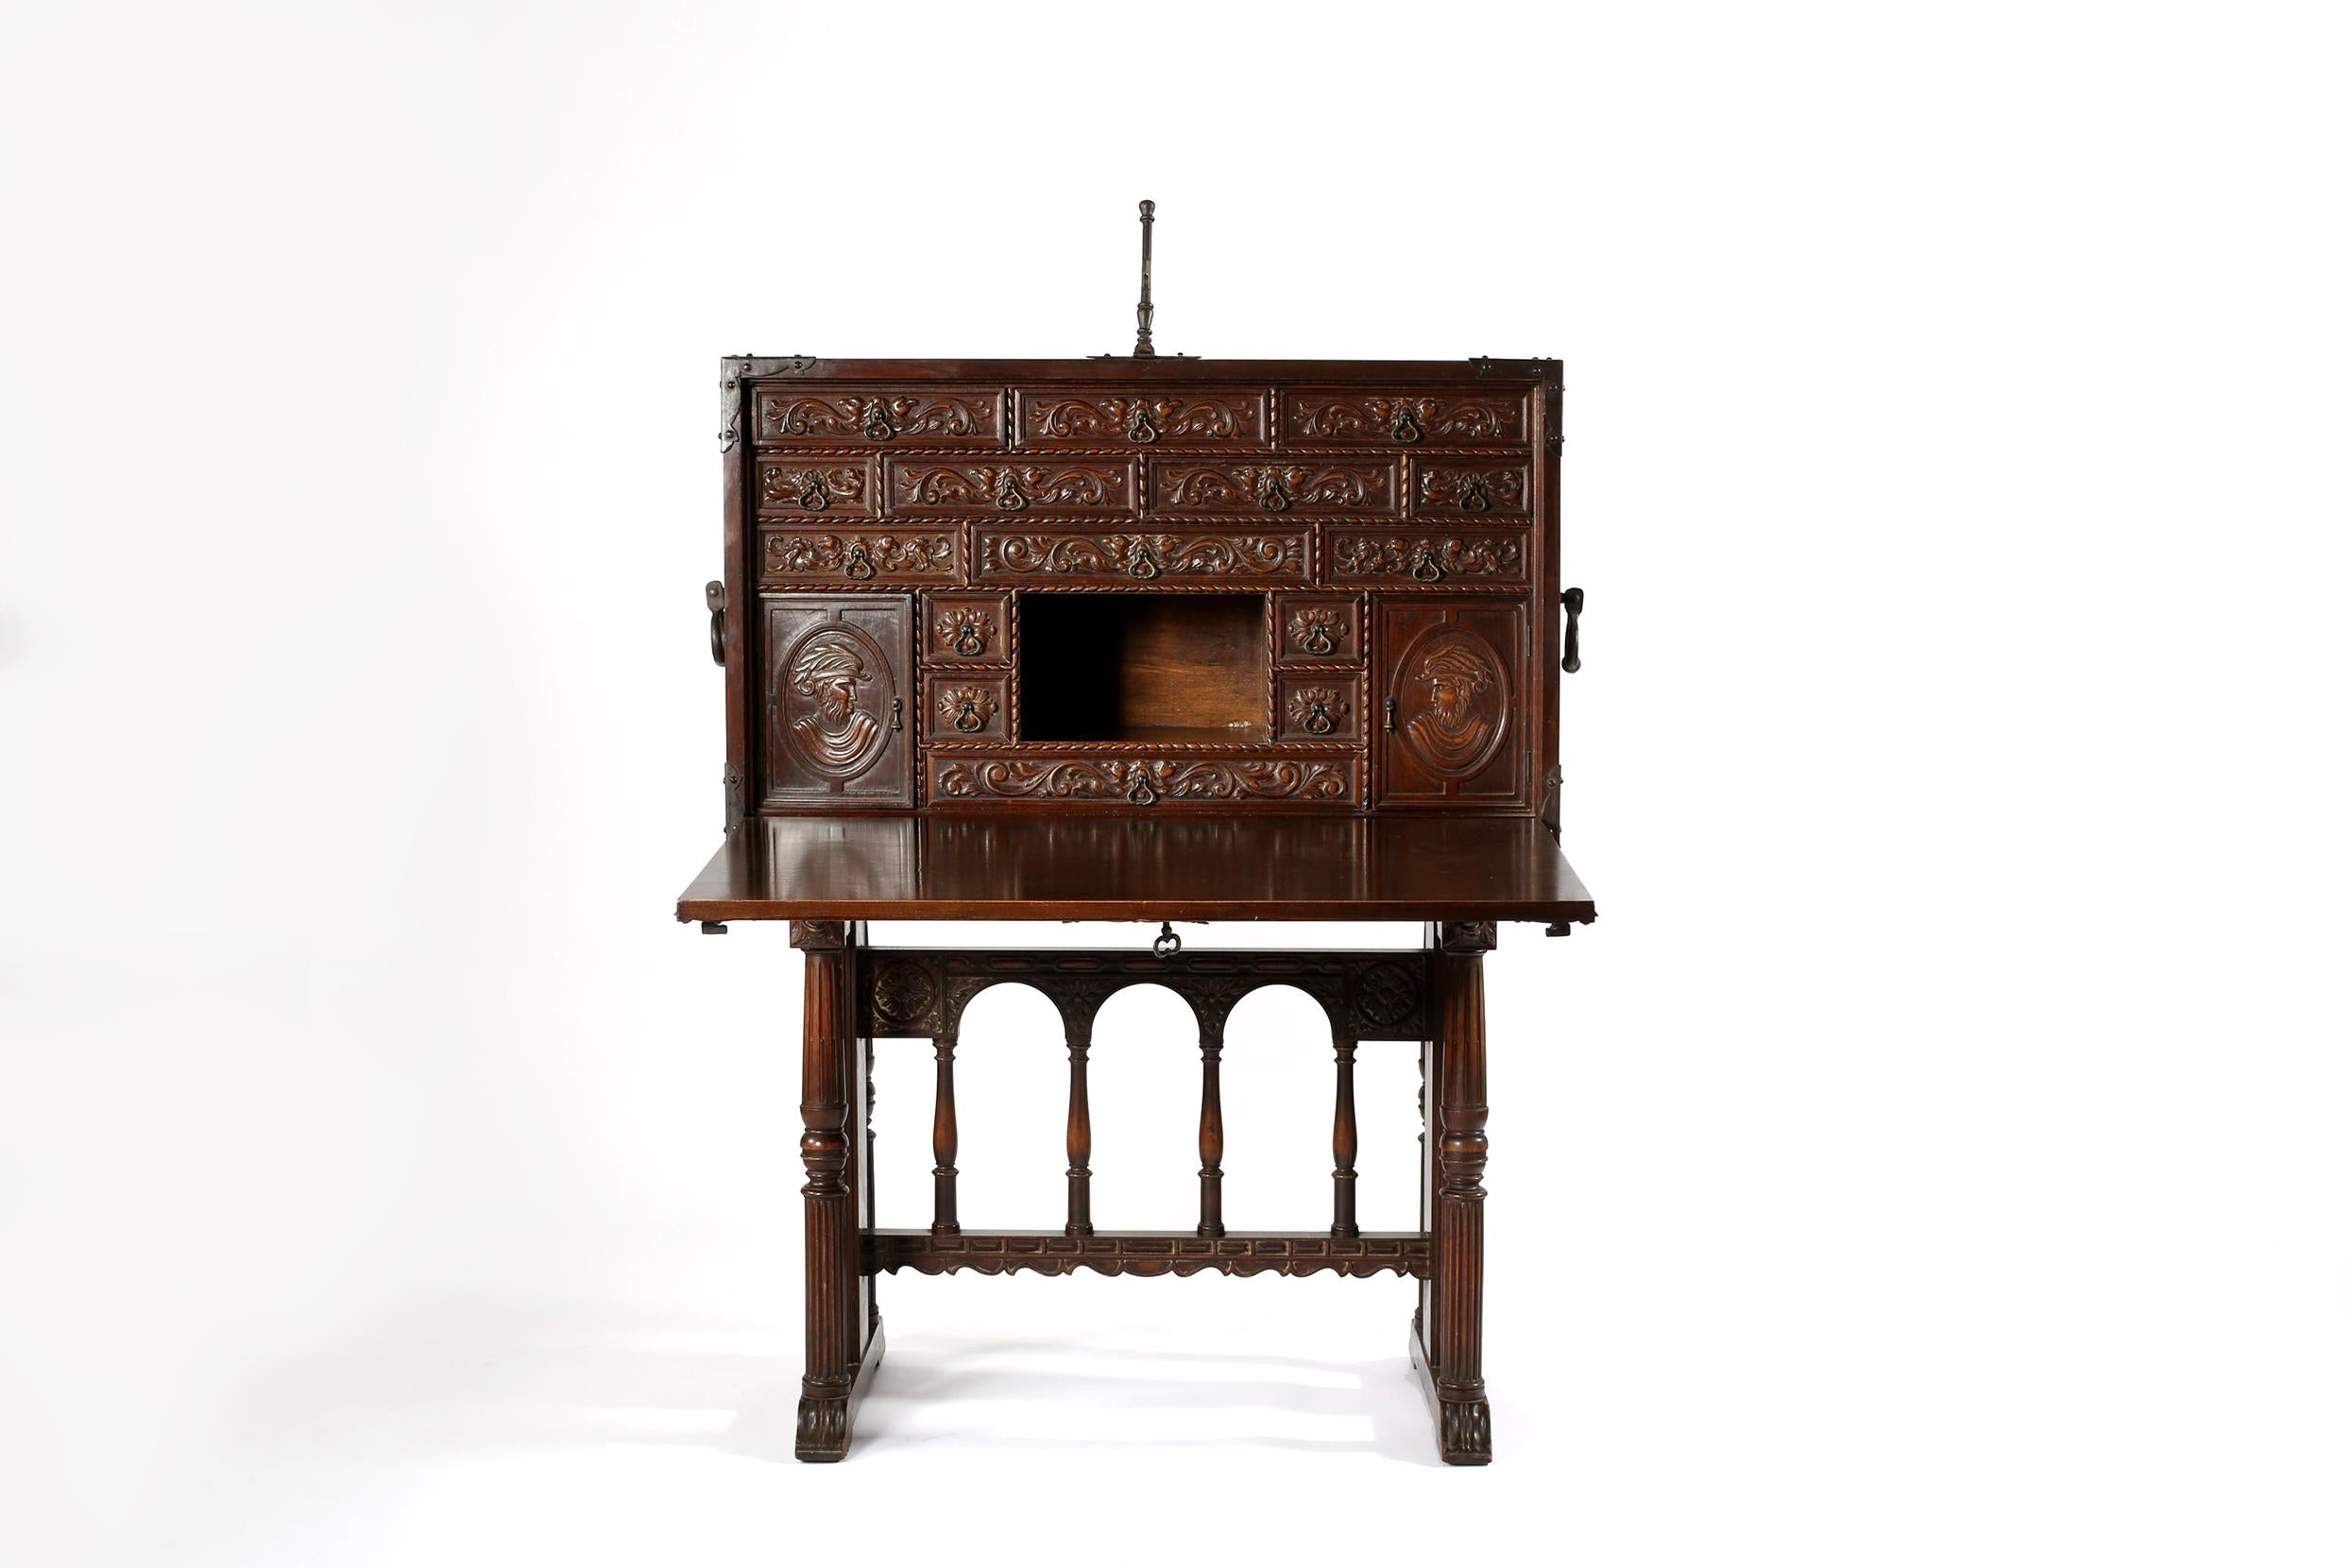 Exquisite 18. Jahrhundert Spanisch Vargueño / Kabinett Schreibtisch / Brust auf Stand mit dramatischen Hand geschnitzt Design Details. Auch als Bargueño bekannt, ein Schrank im Campaigner-Stil, der als tragbarer Schreibtisch mit einer aufklappbaren